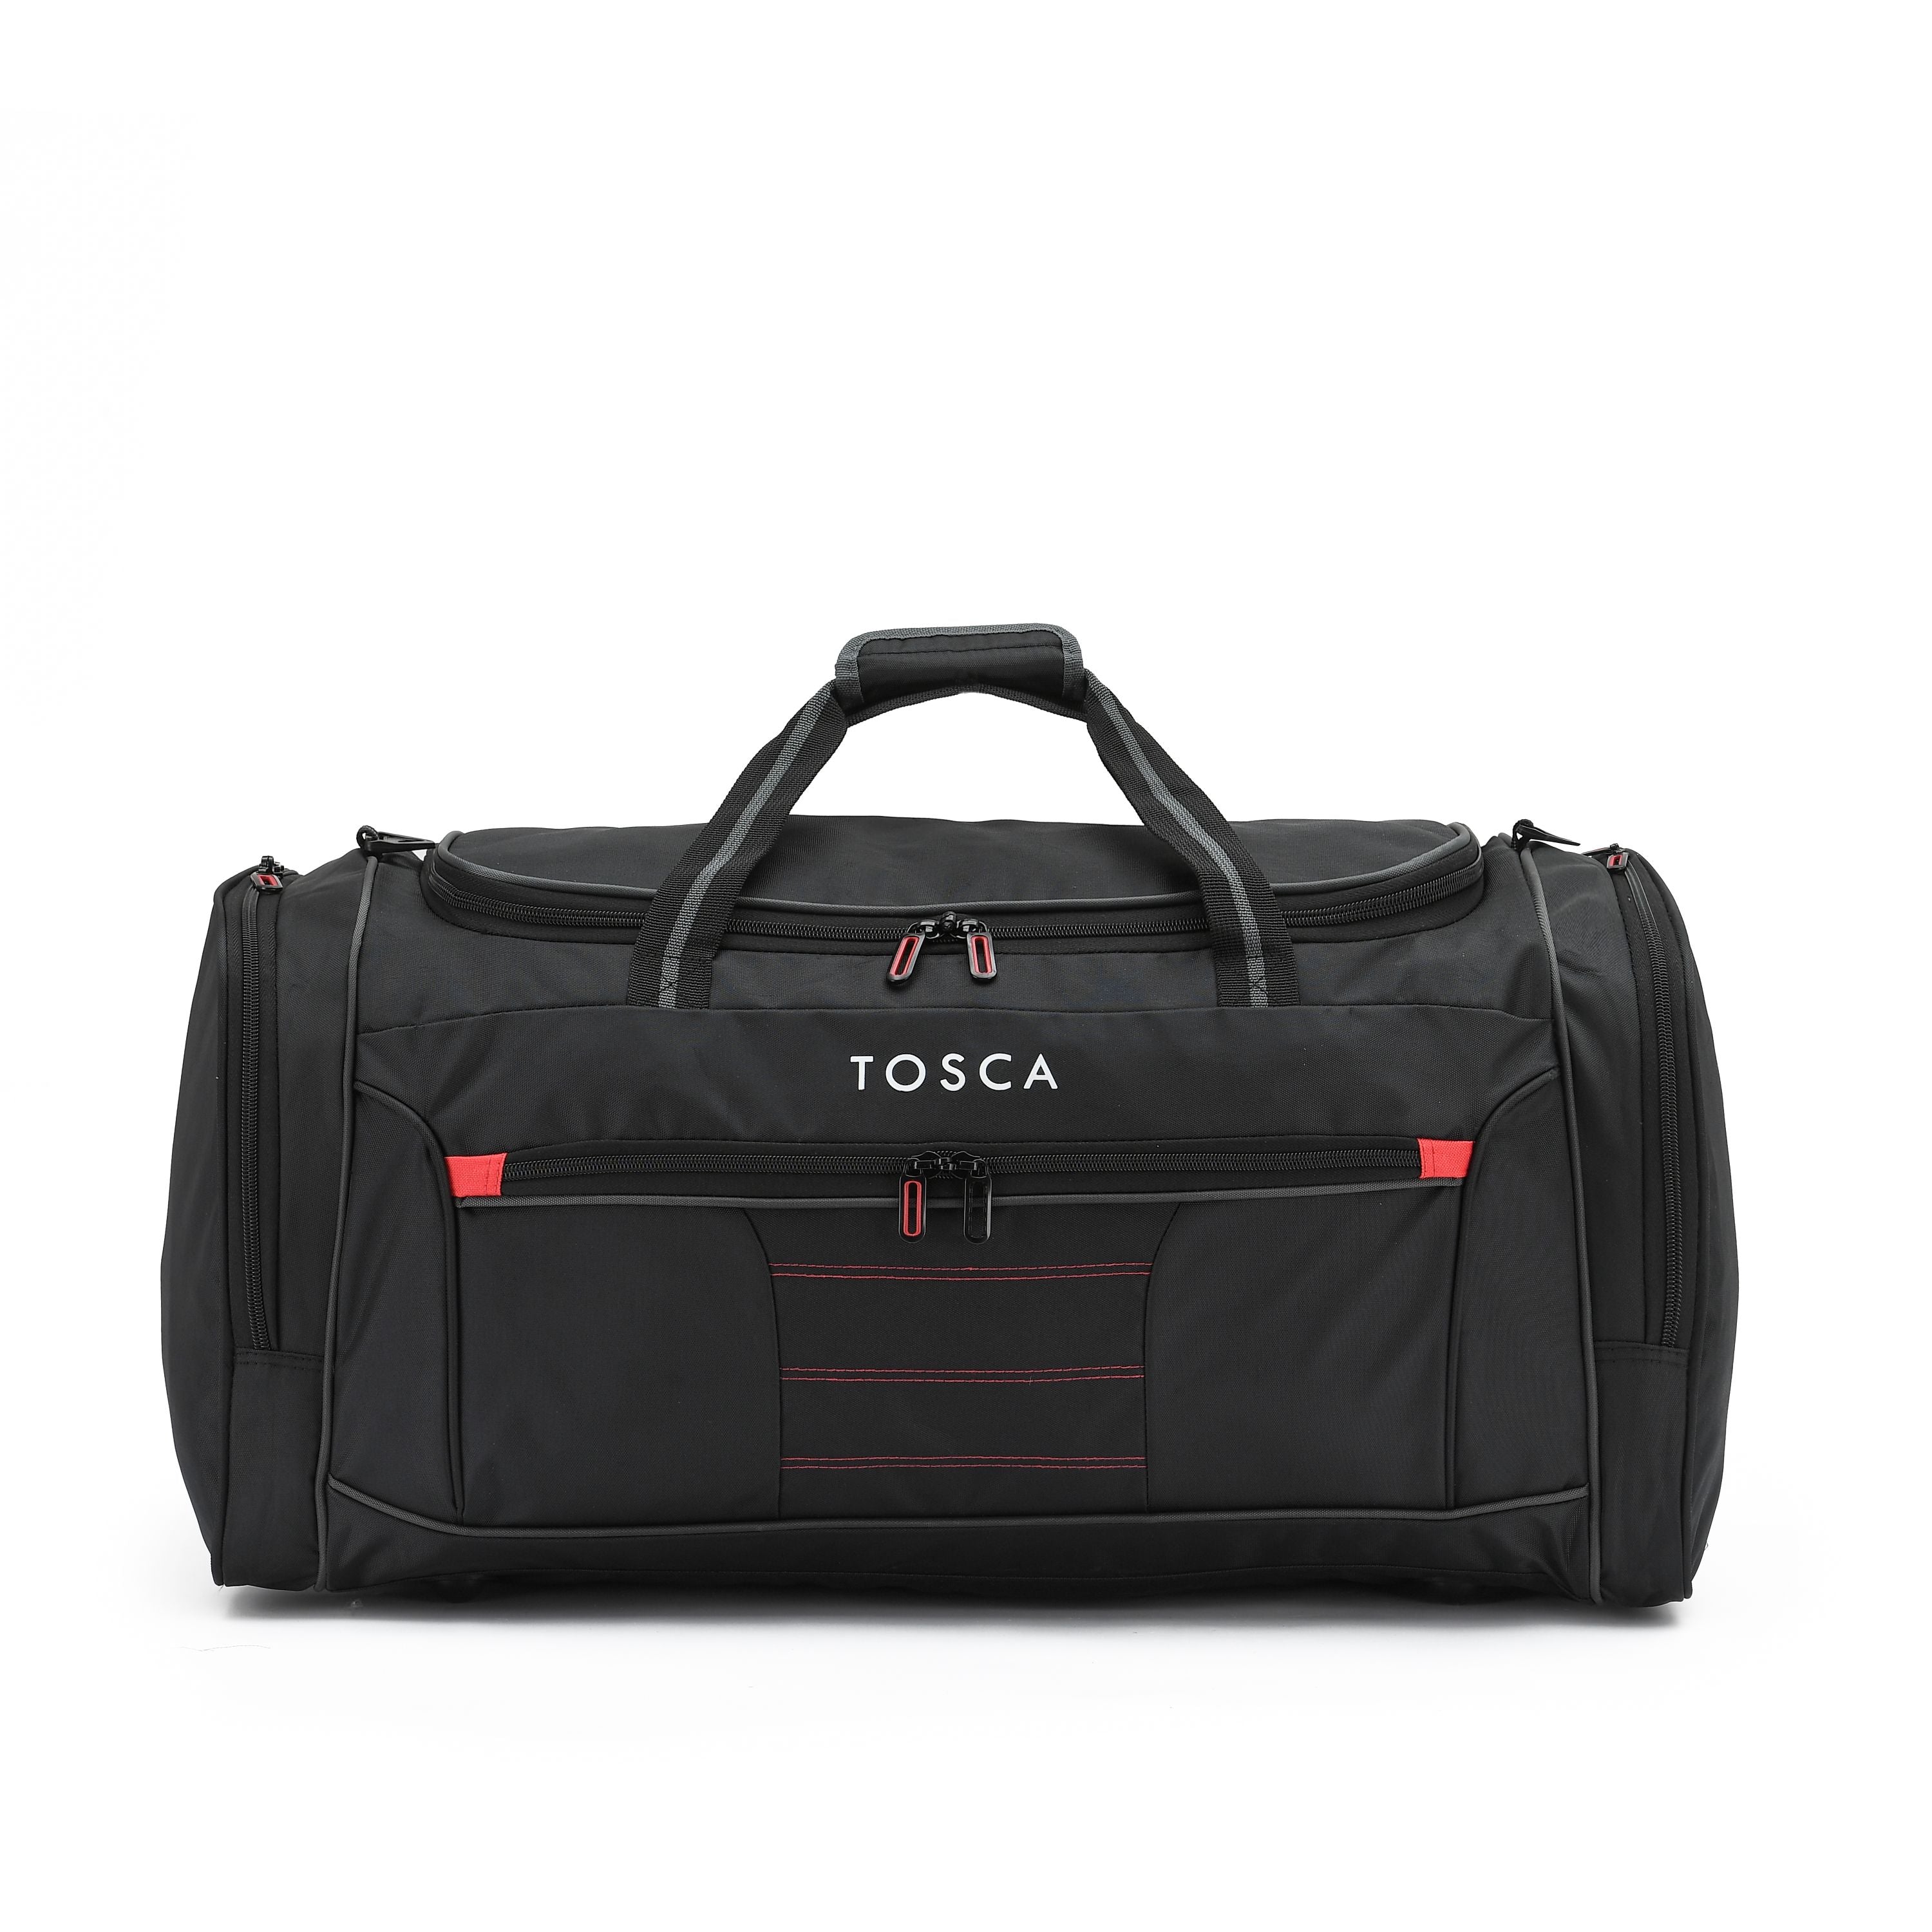 Tosca - TCA794M 70cm Medium Duffle Bag - Black/Red